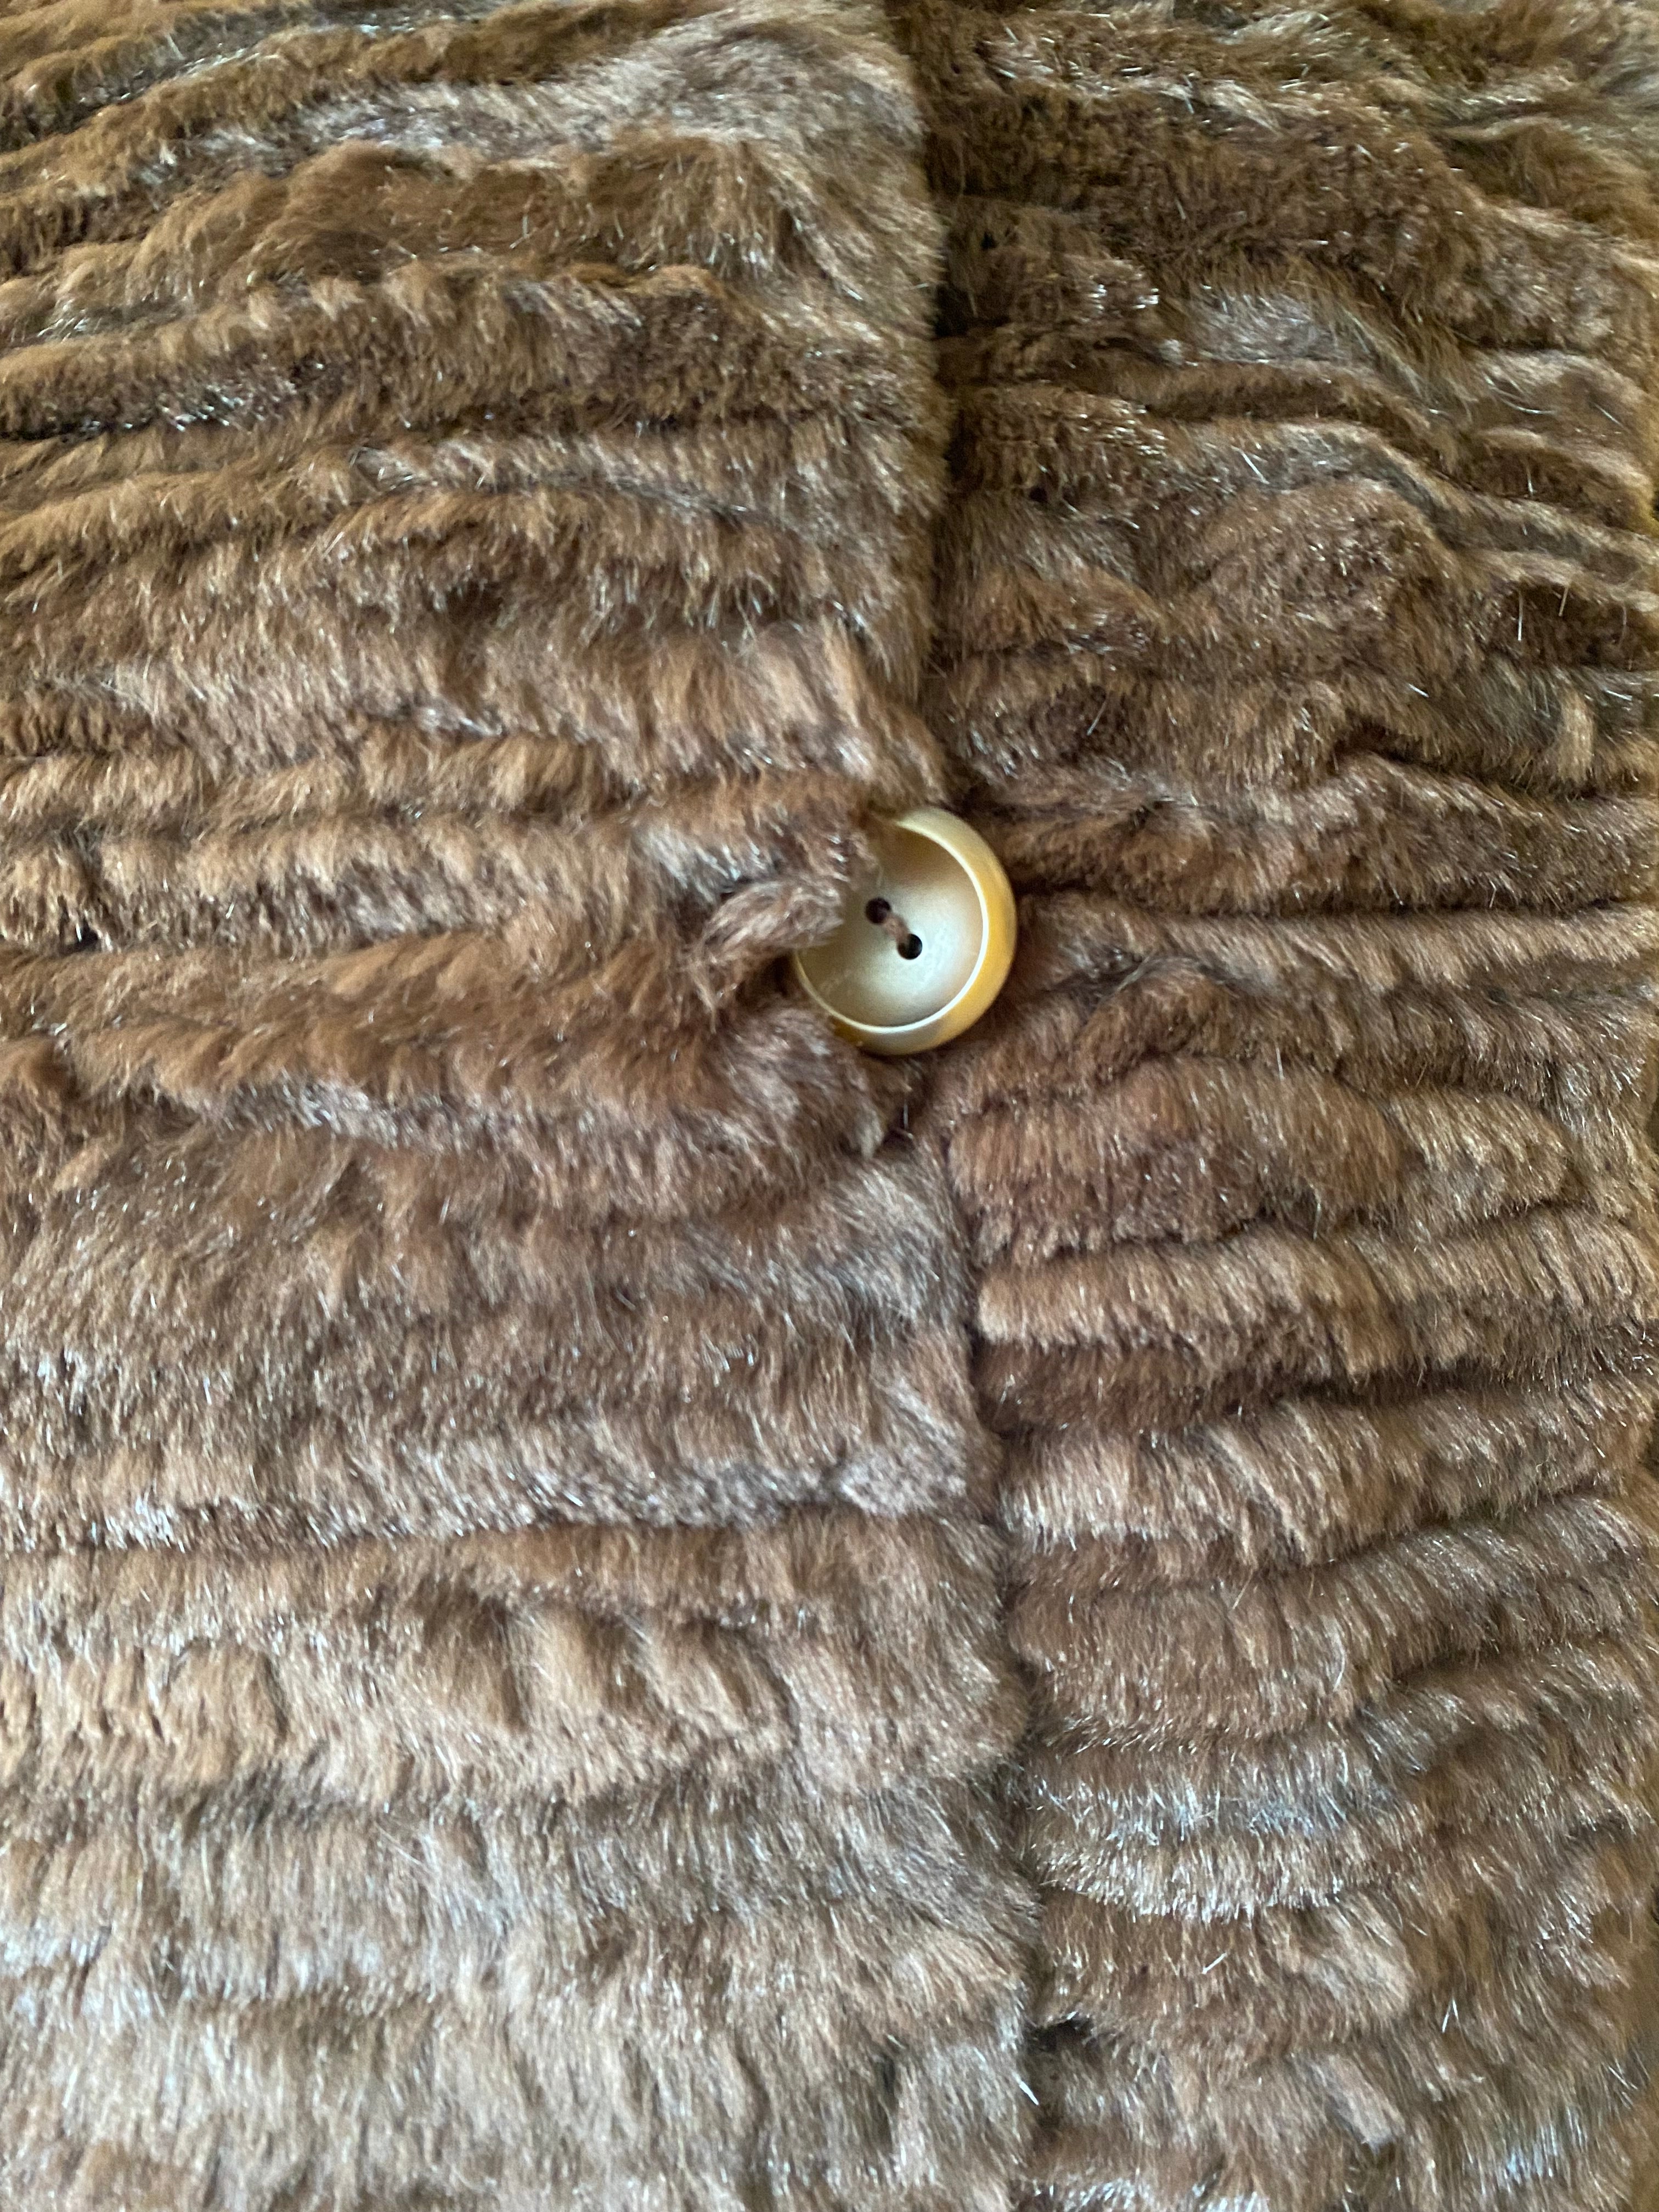 Reversible Brown Fur Coat